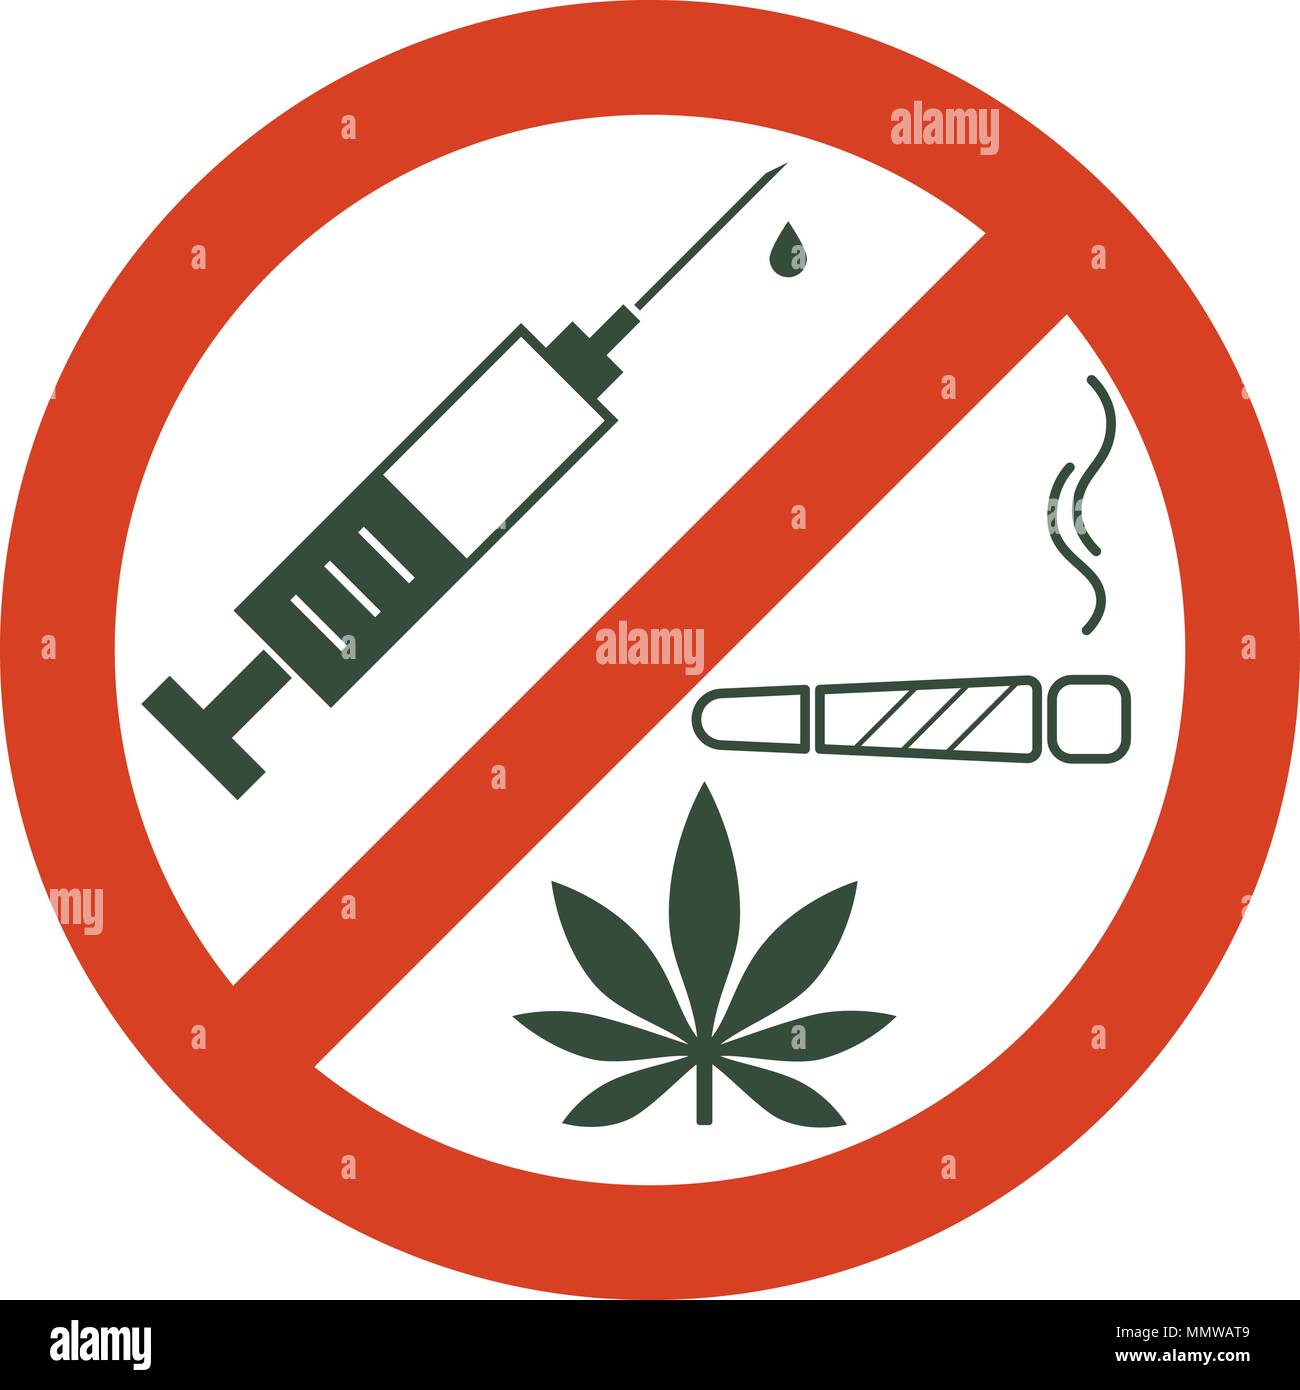 Keine Drogen erlaubt. Drogen, Marihuana Blatt mit verbotenen Zeichen - keine Droge. Drogen Symbol in Verbot roten Kreis. Anti Drogen. Nur Nein sagen. Isolierte Vektor Stock Vektor